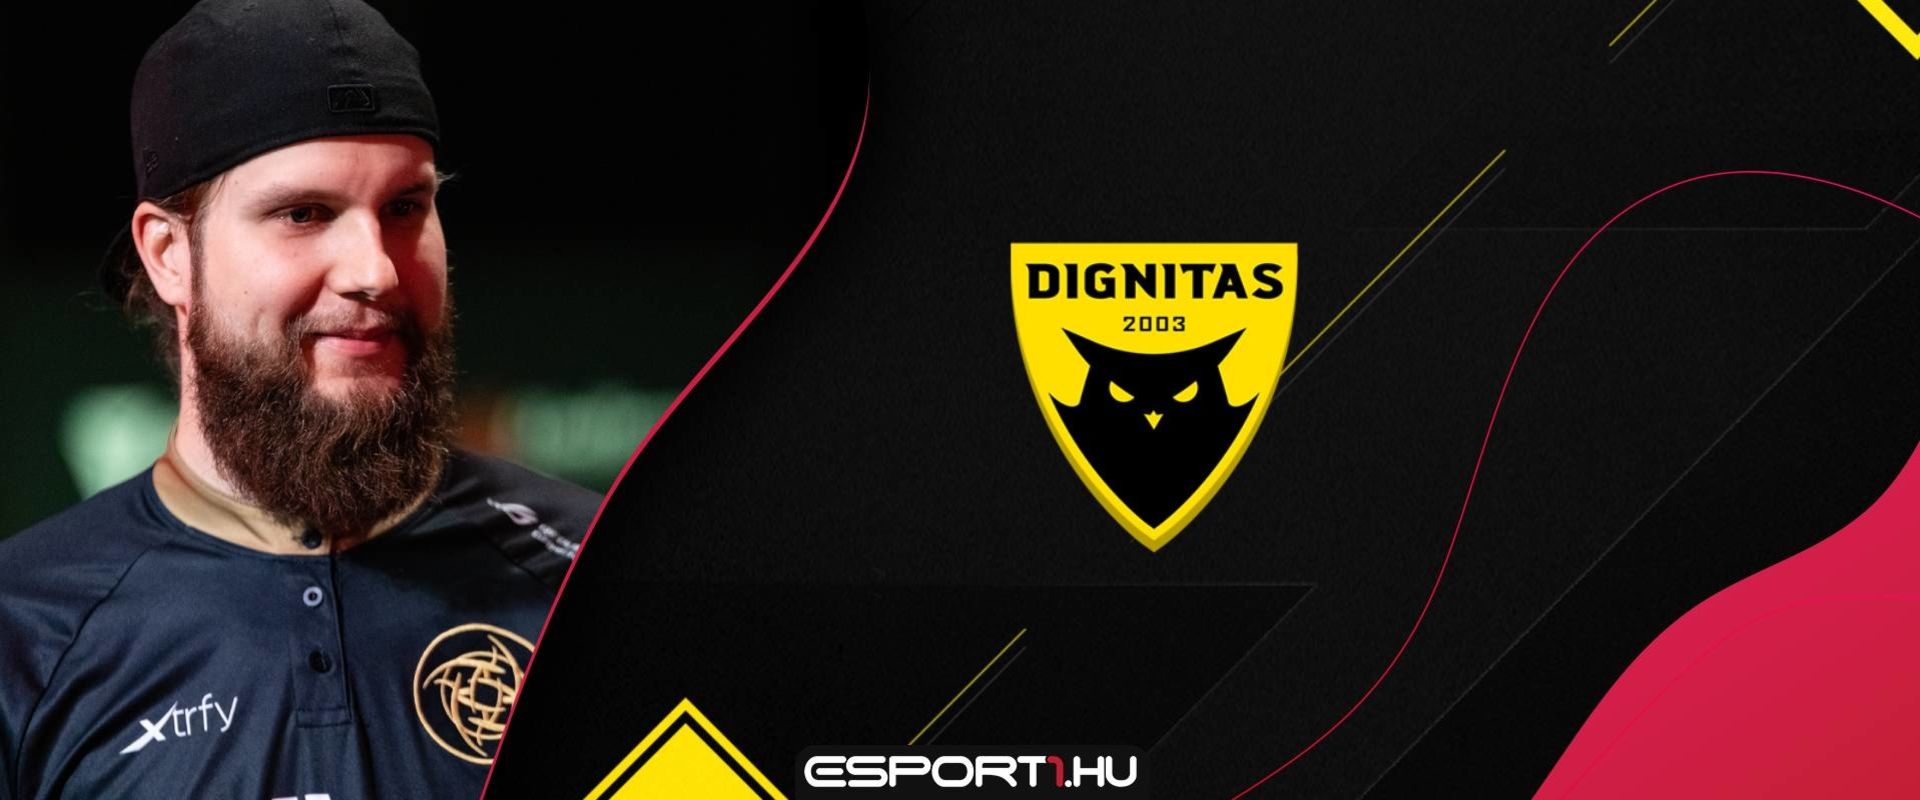 Svéd és norvég játékosokkal erősített a Dignitas - Kész is az új csapat